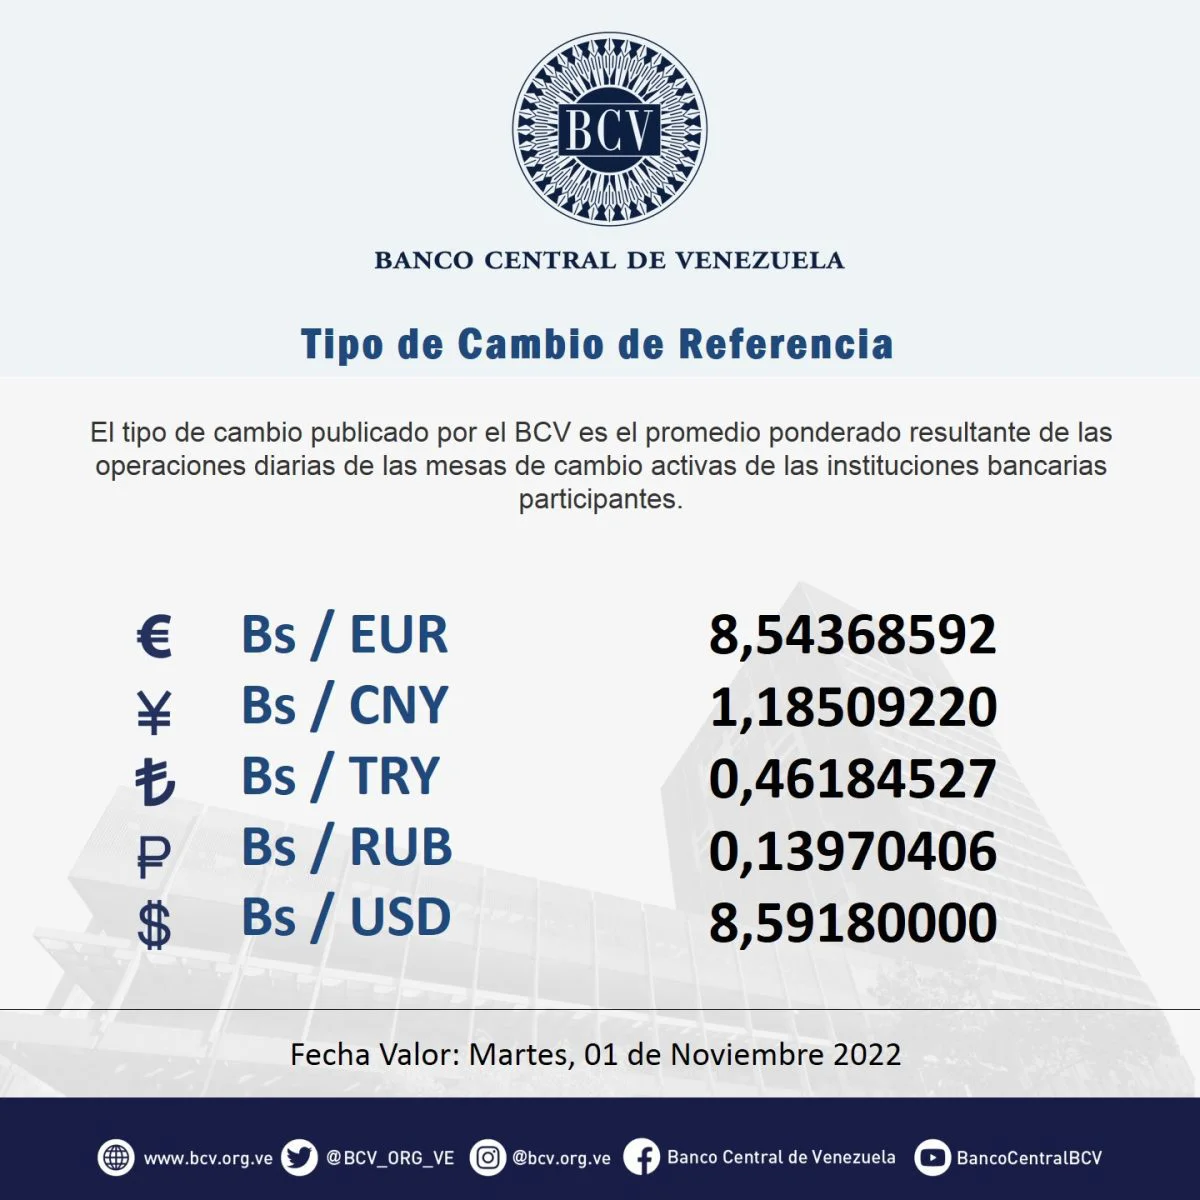 dolartoday en venezuela precio del dolar viernes 28 de octubre de 2022 laverdaddemonagas.com bcv en alza